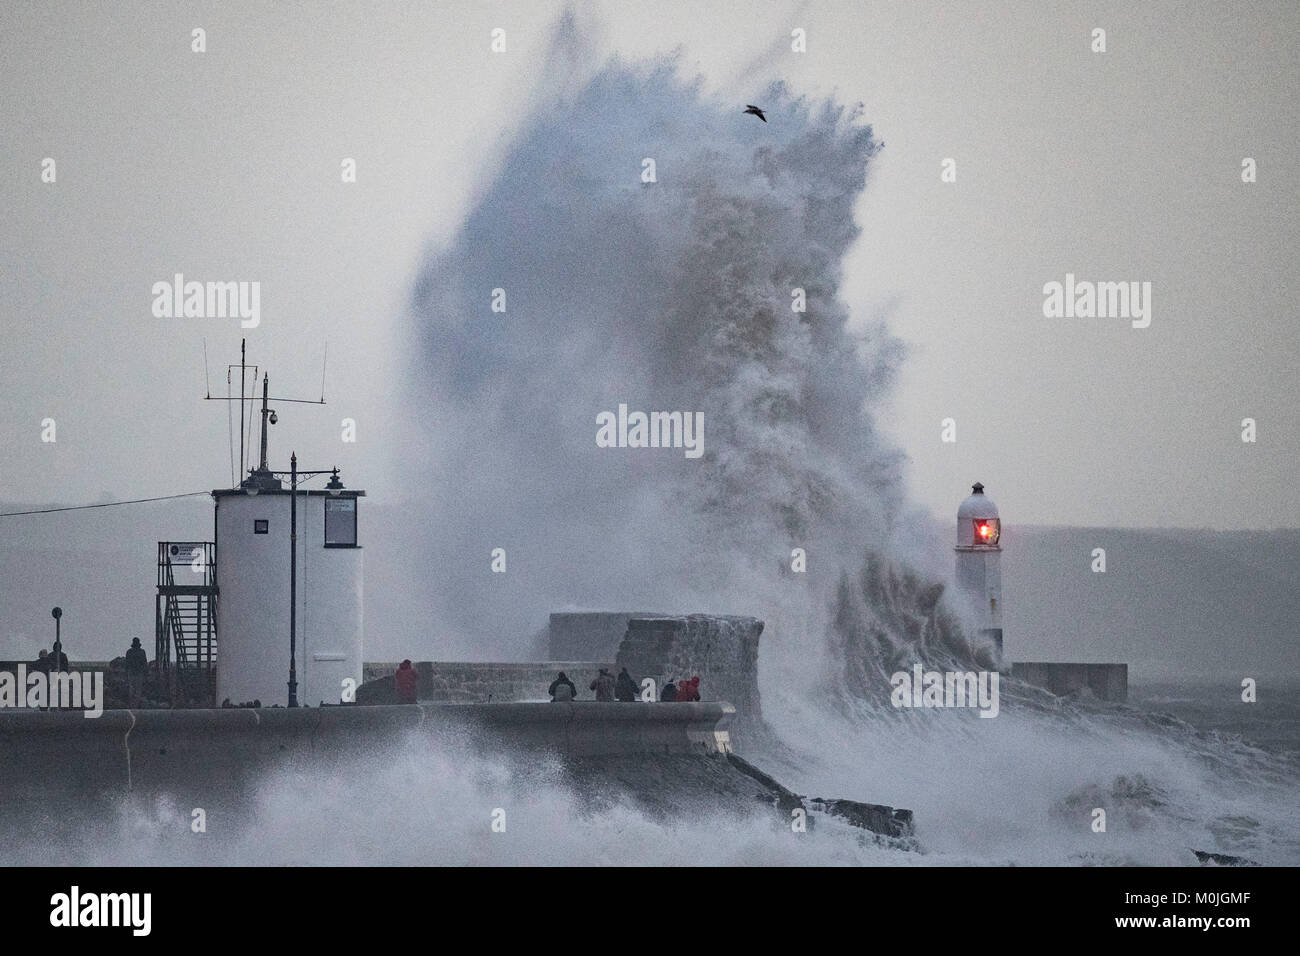 Onde infrangersi contro la parete del porto a Porthawl, South Wales, Regno Unito durante la tempesta Eleonora. Il Met Office ha emesso un avviso meteo per venti forti. Foto Stock